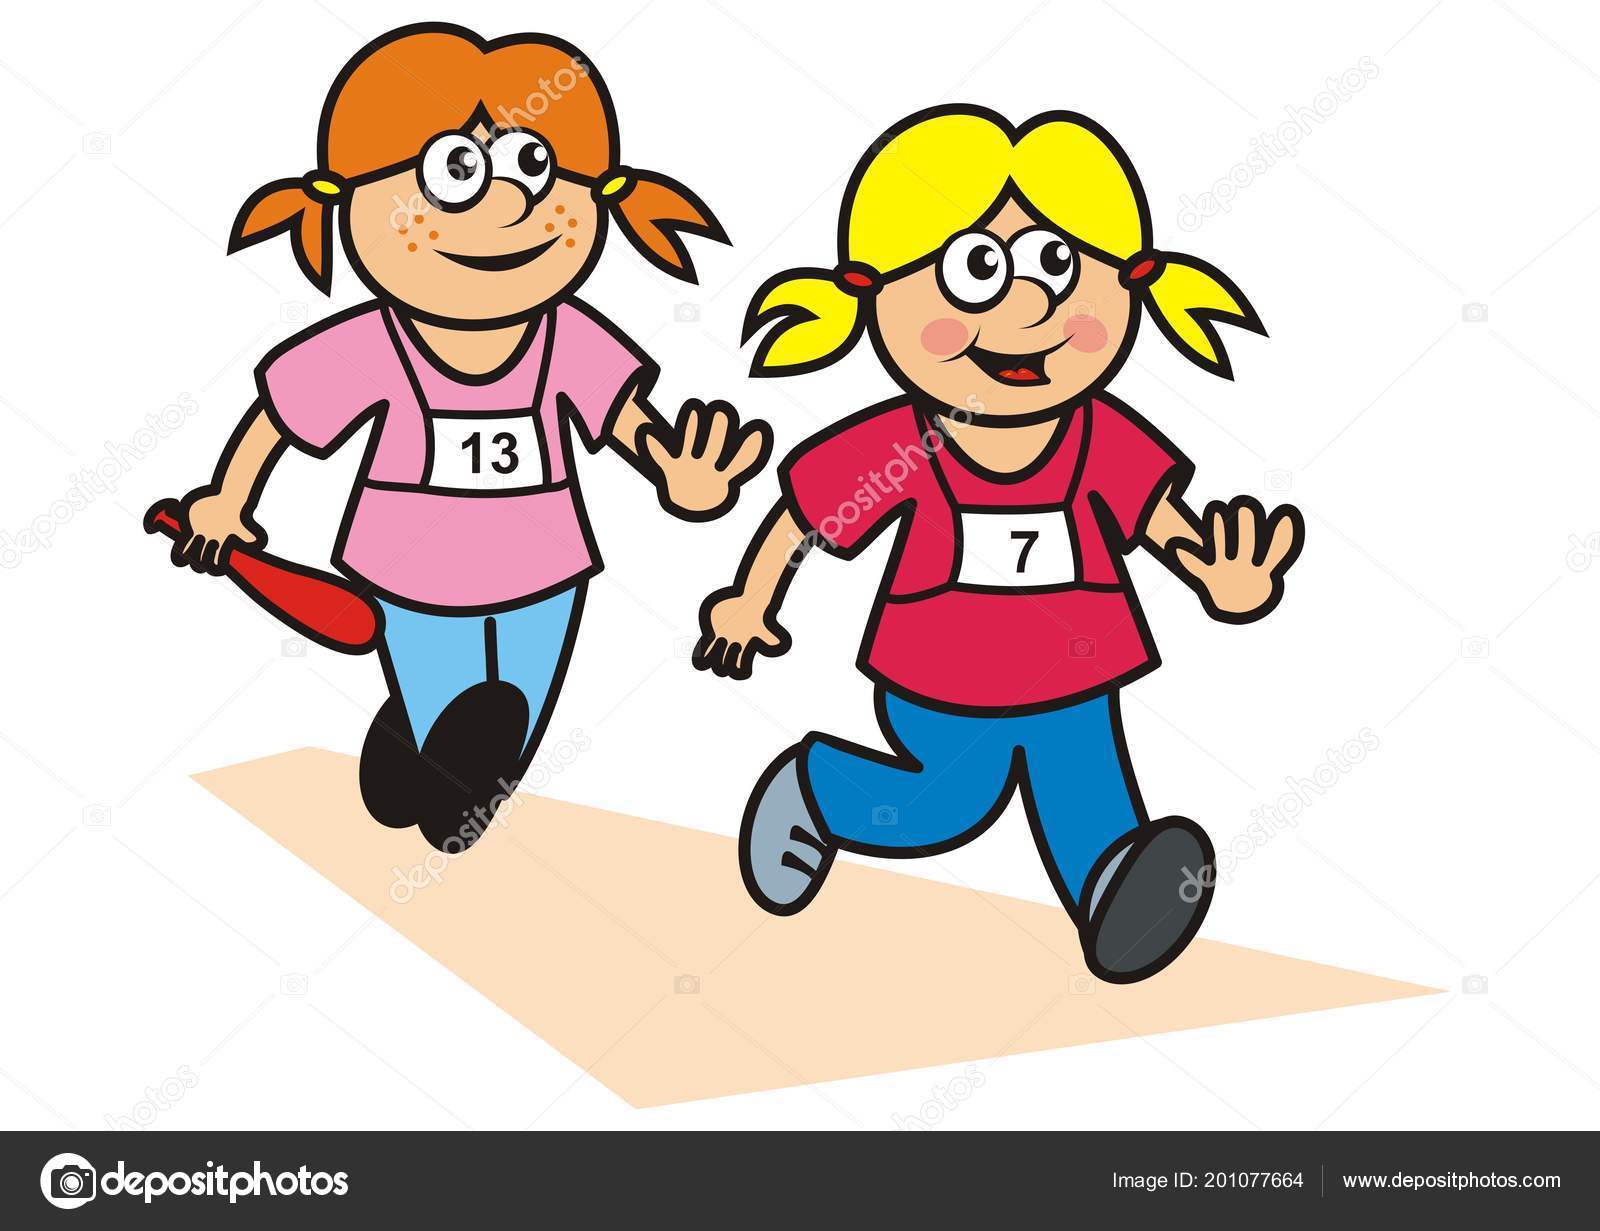 2 girls running